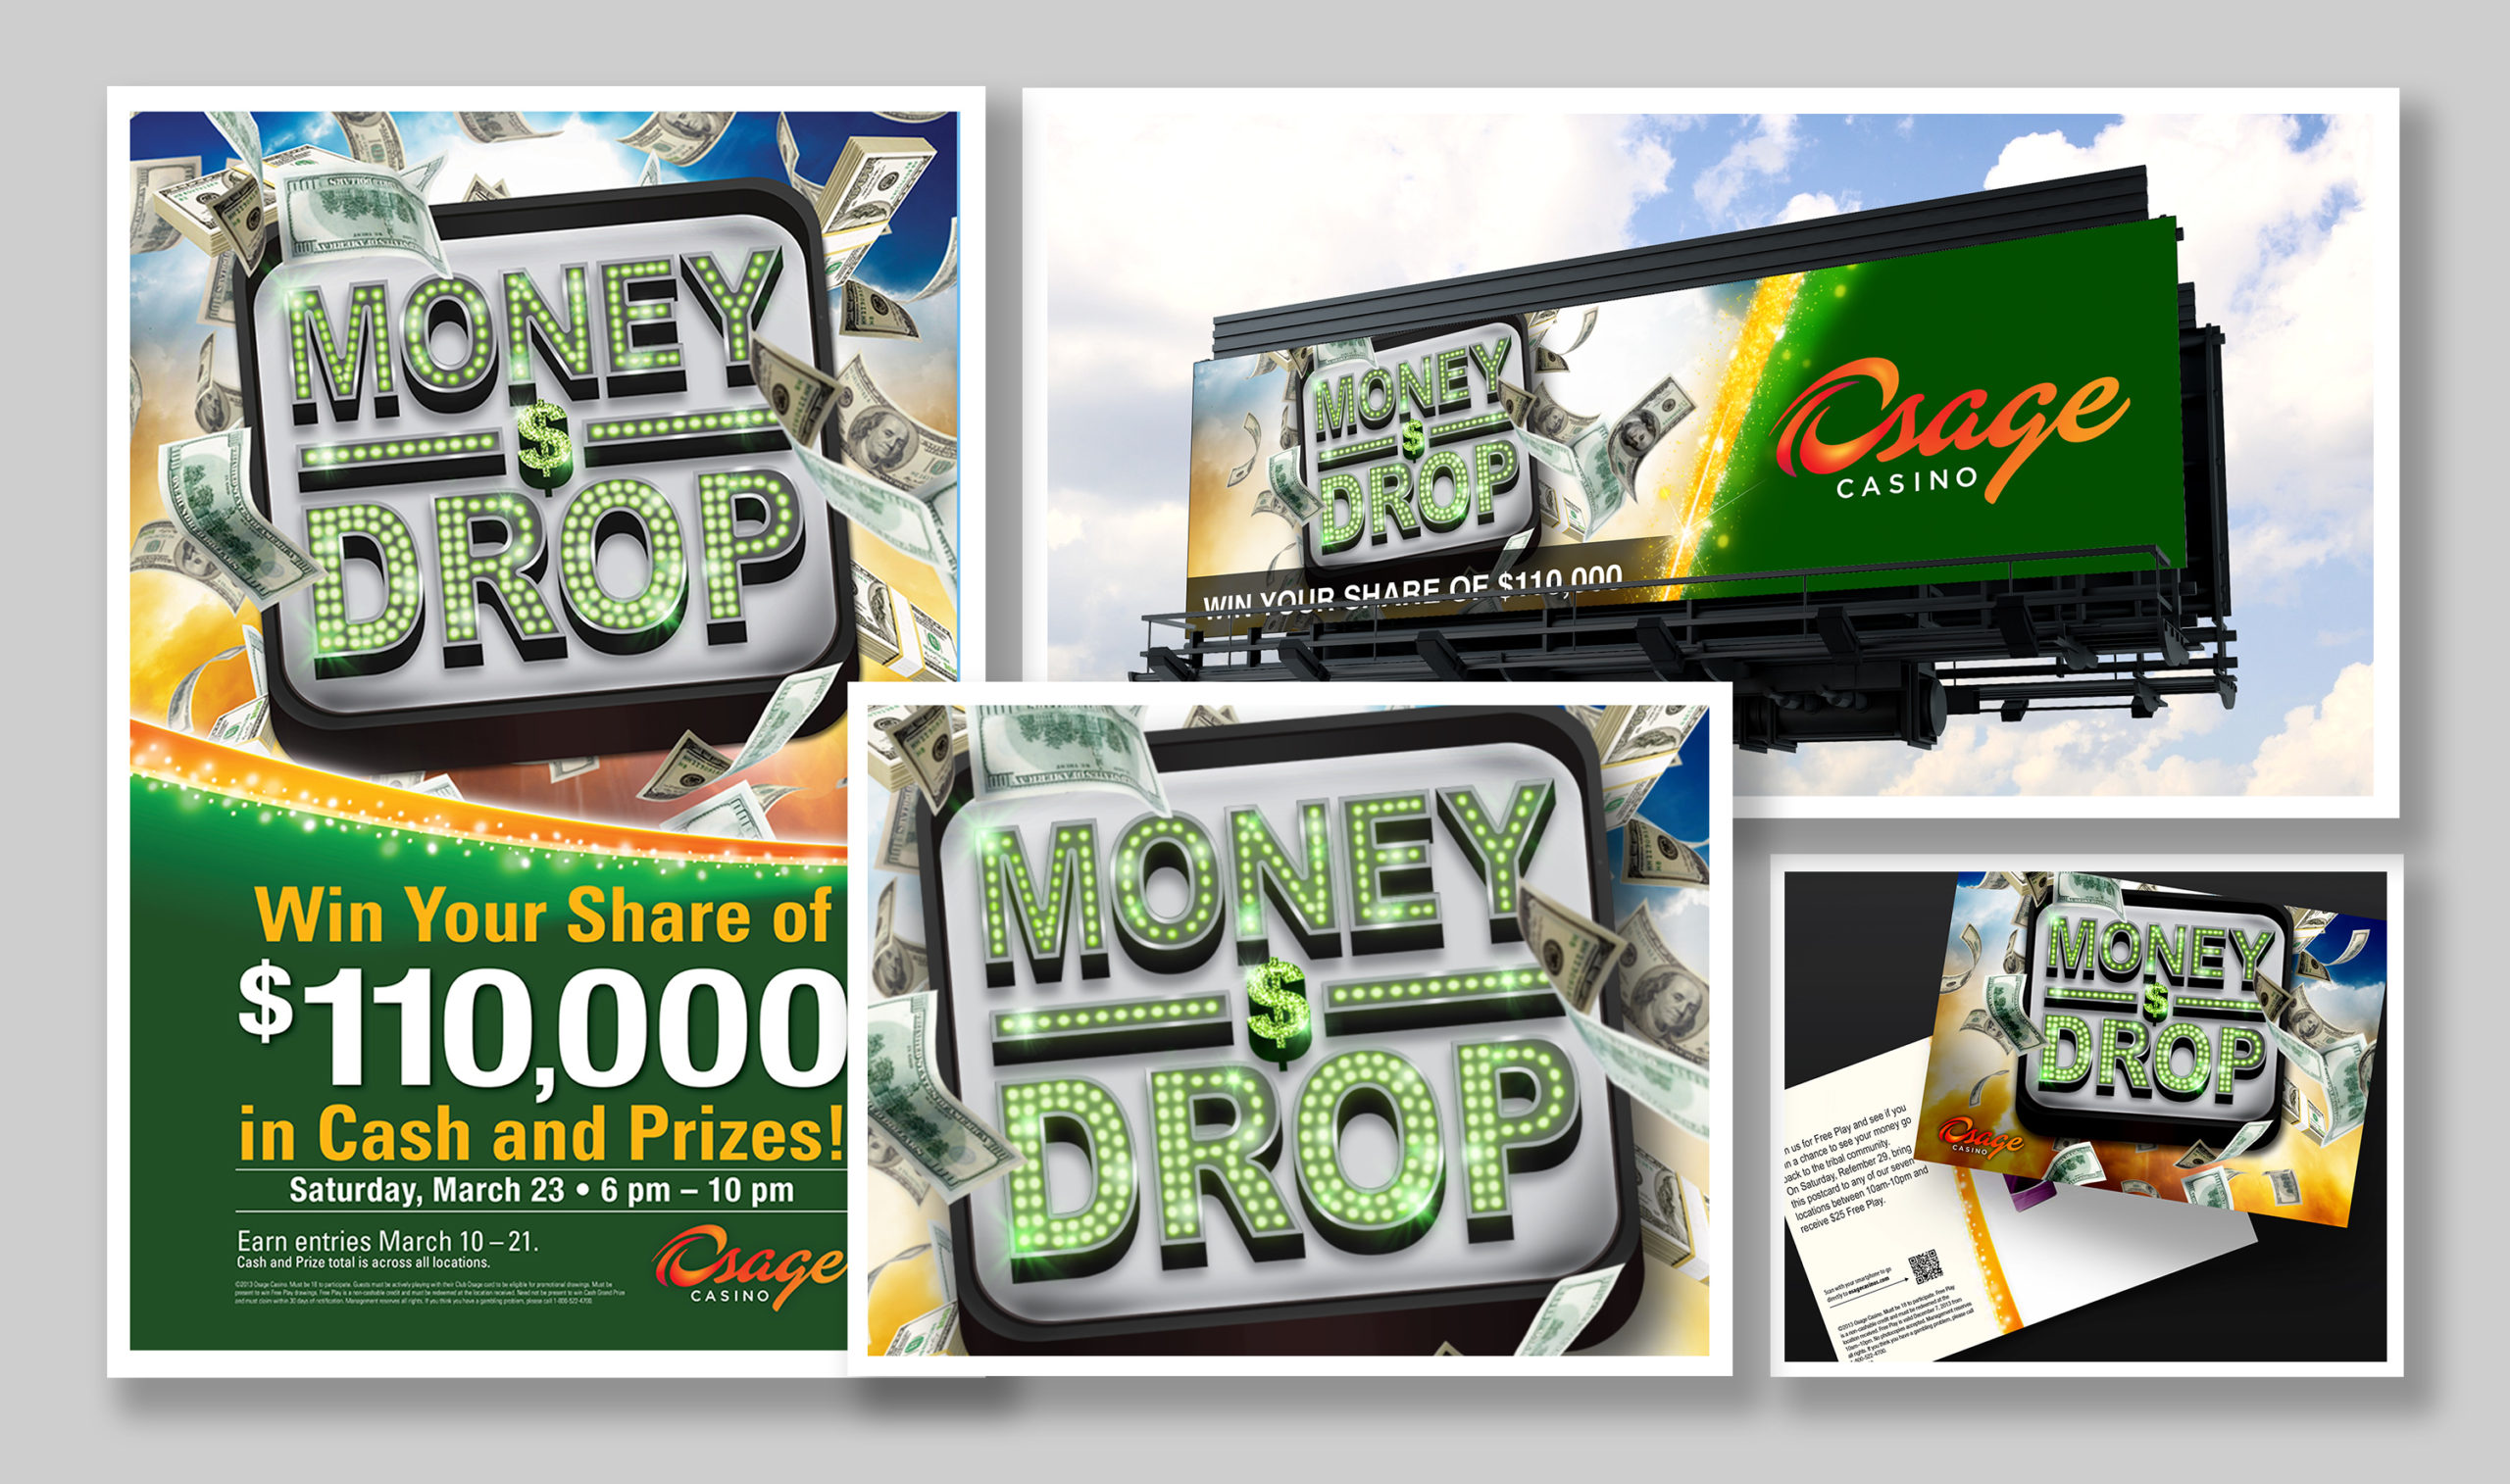 Osage Money Drop Campaign